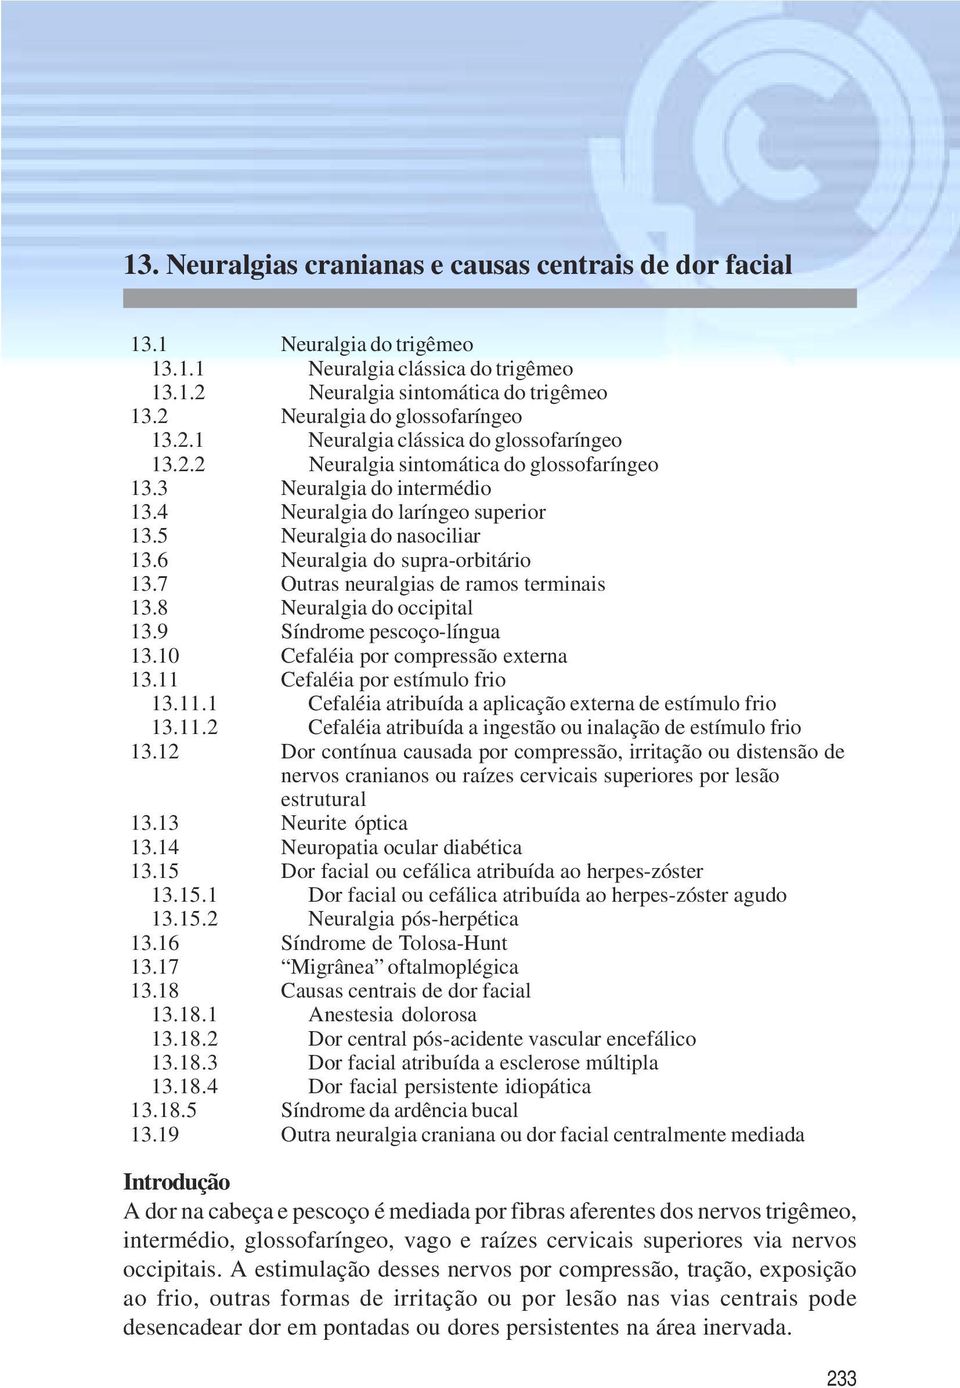 5 Neuralgia do nasociliar 13.6 Neuralgia do supra-orbitário 13.7 Outras neuralgias de ramos terminais 13.8 Neuralgia do occipital 13.9 Síndrome pescoço-língua 13.10 Cefaléia por compressão externa 13.